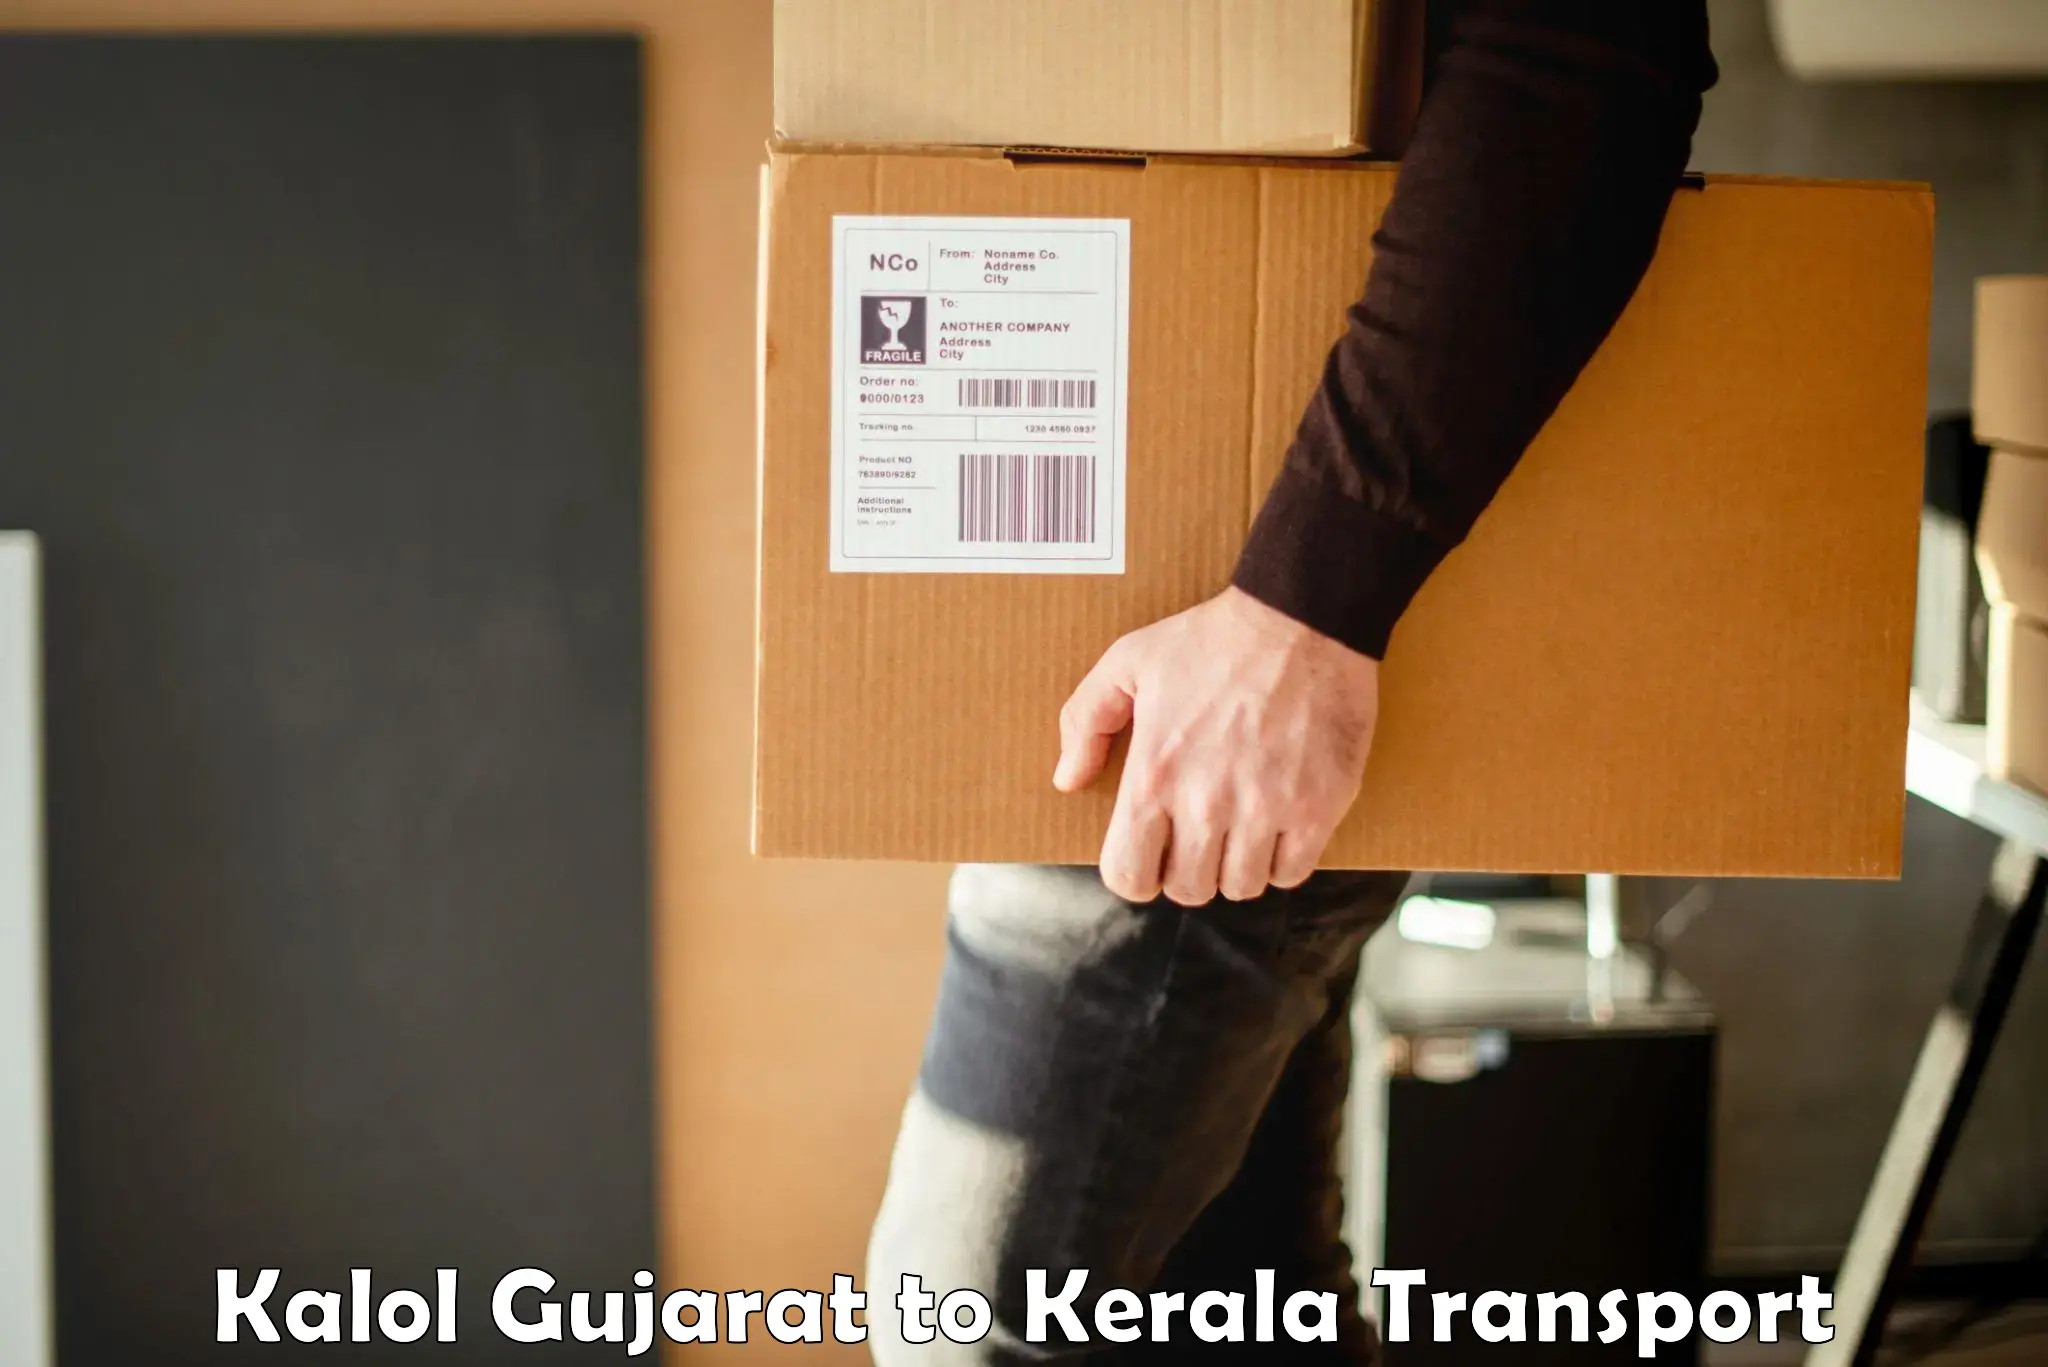 International cargo transportation services Kalol Gujarat to Narikkuni